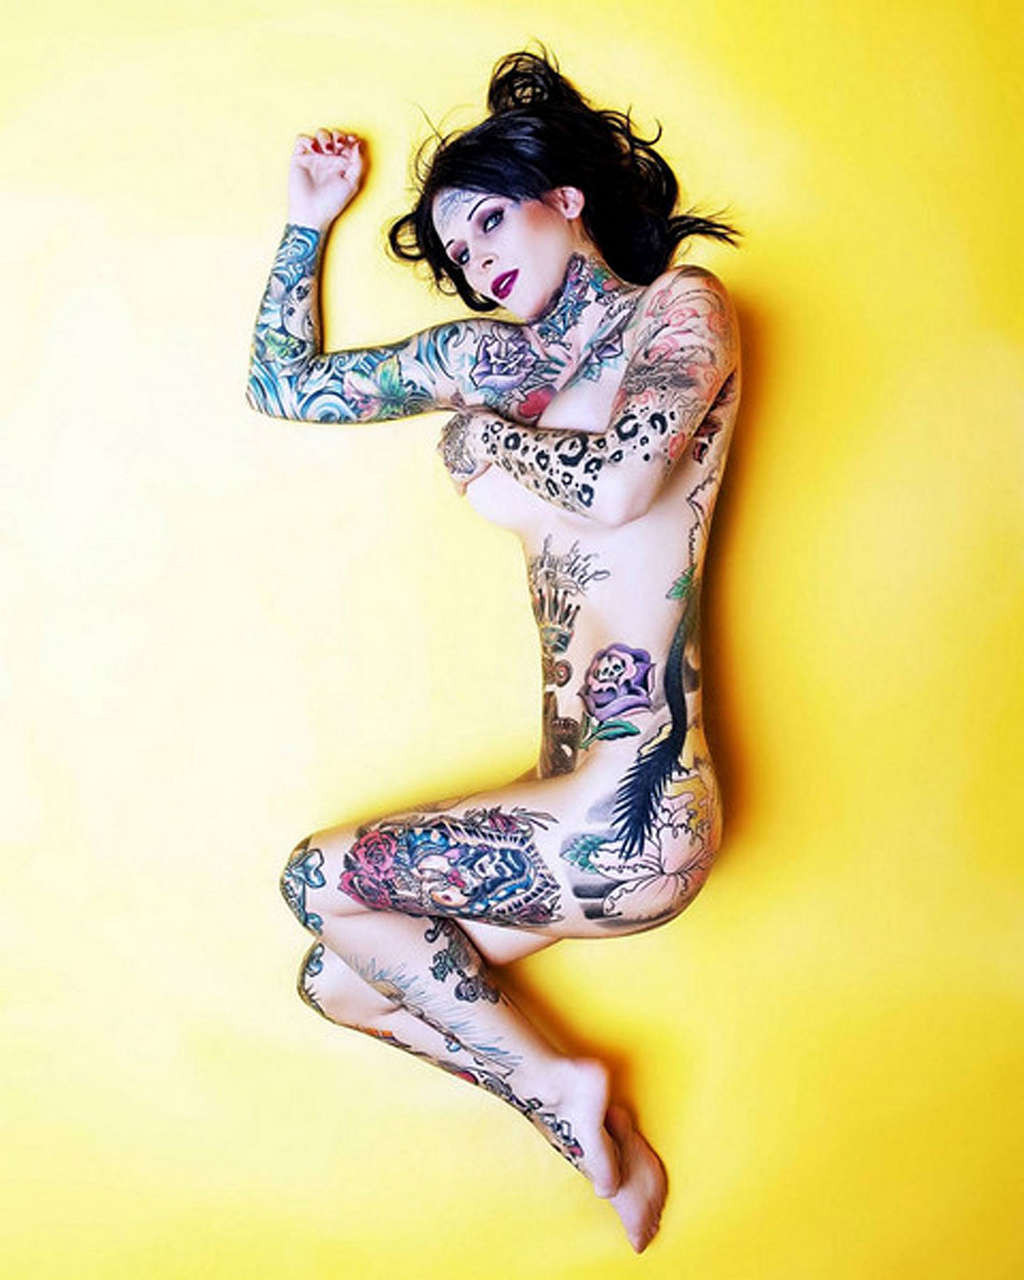 Michelle bombshell zeigt ihren heißen Körper und sexy Tattoos
 #75354616